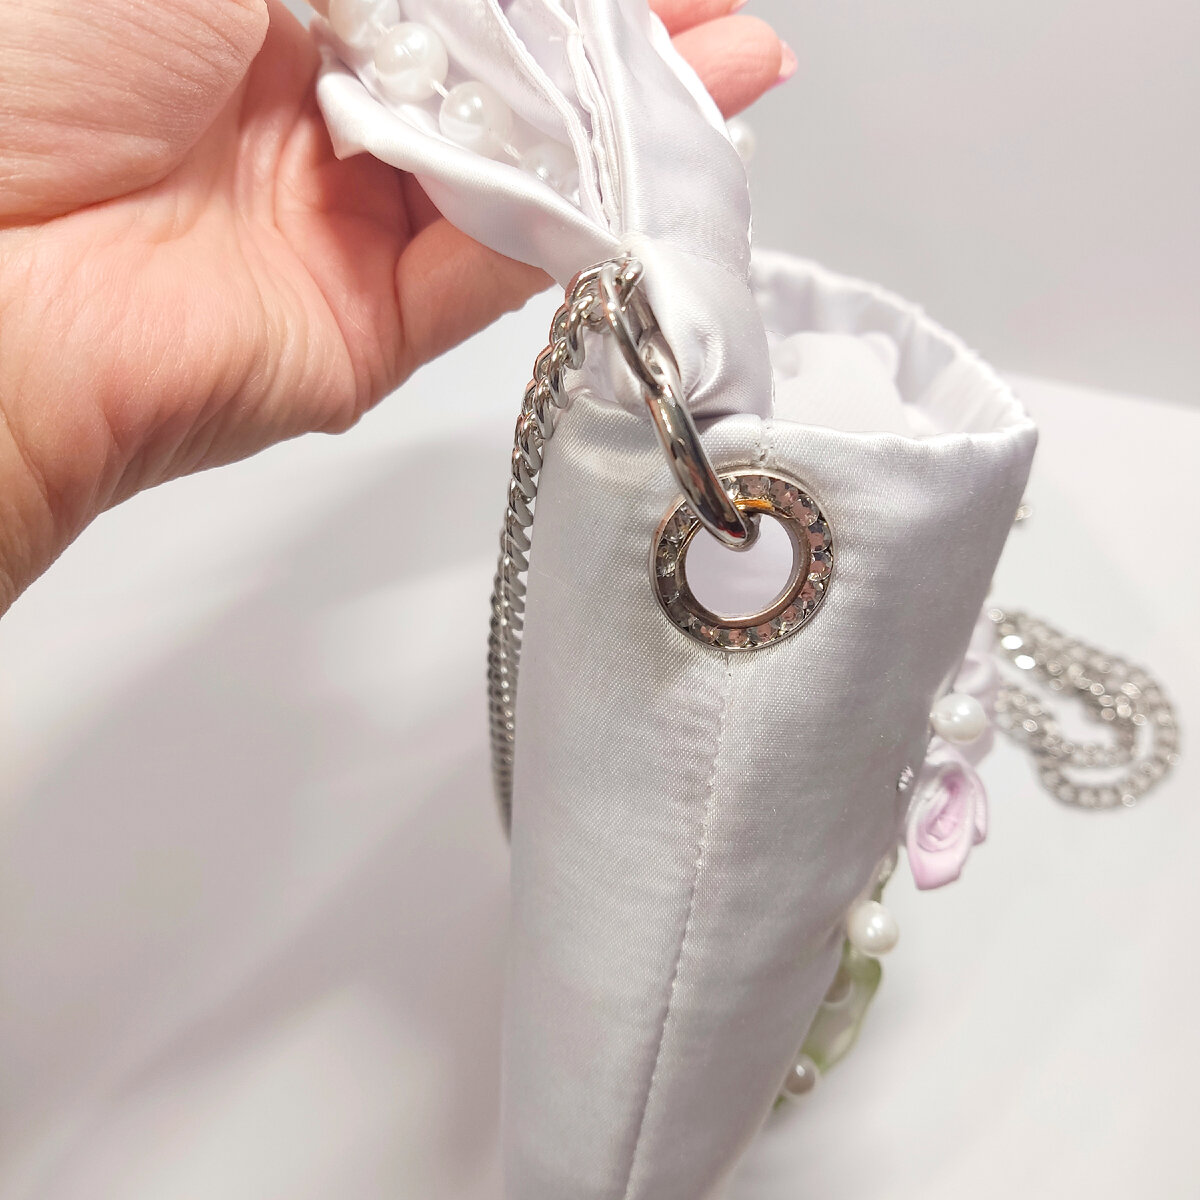 Купите свадебные трендовые сумочки для невесты в нашем салоне! - Свадебный салон «Белый Лебедь»